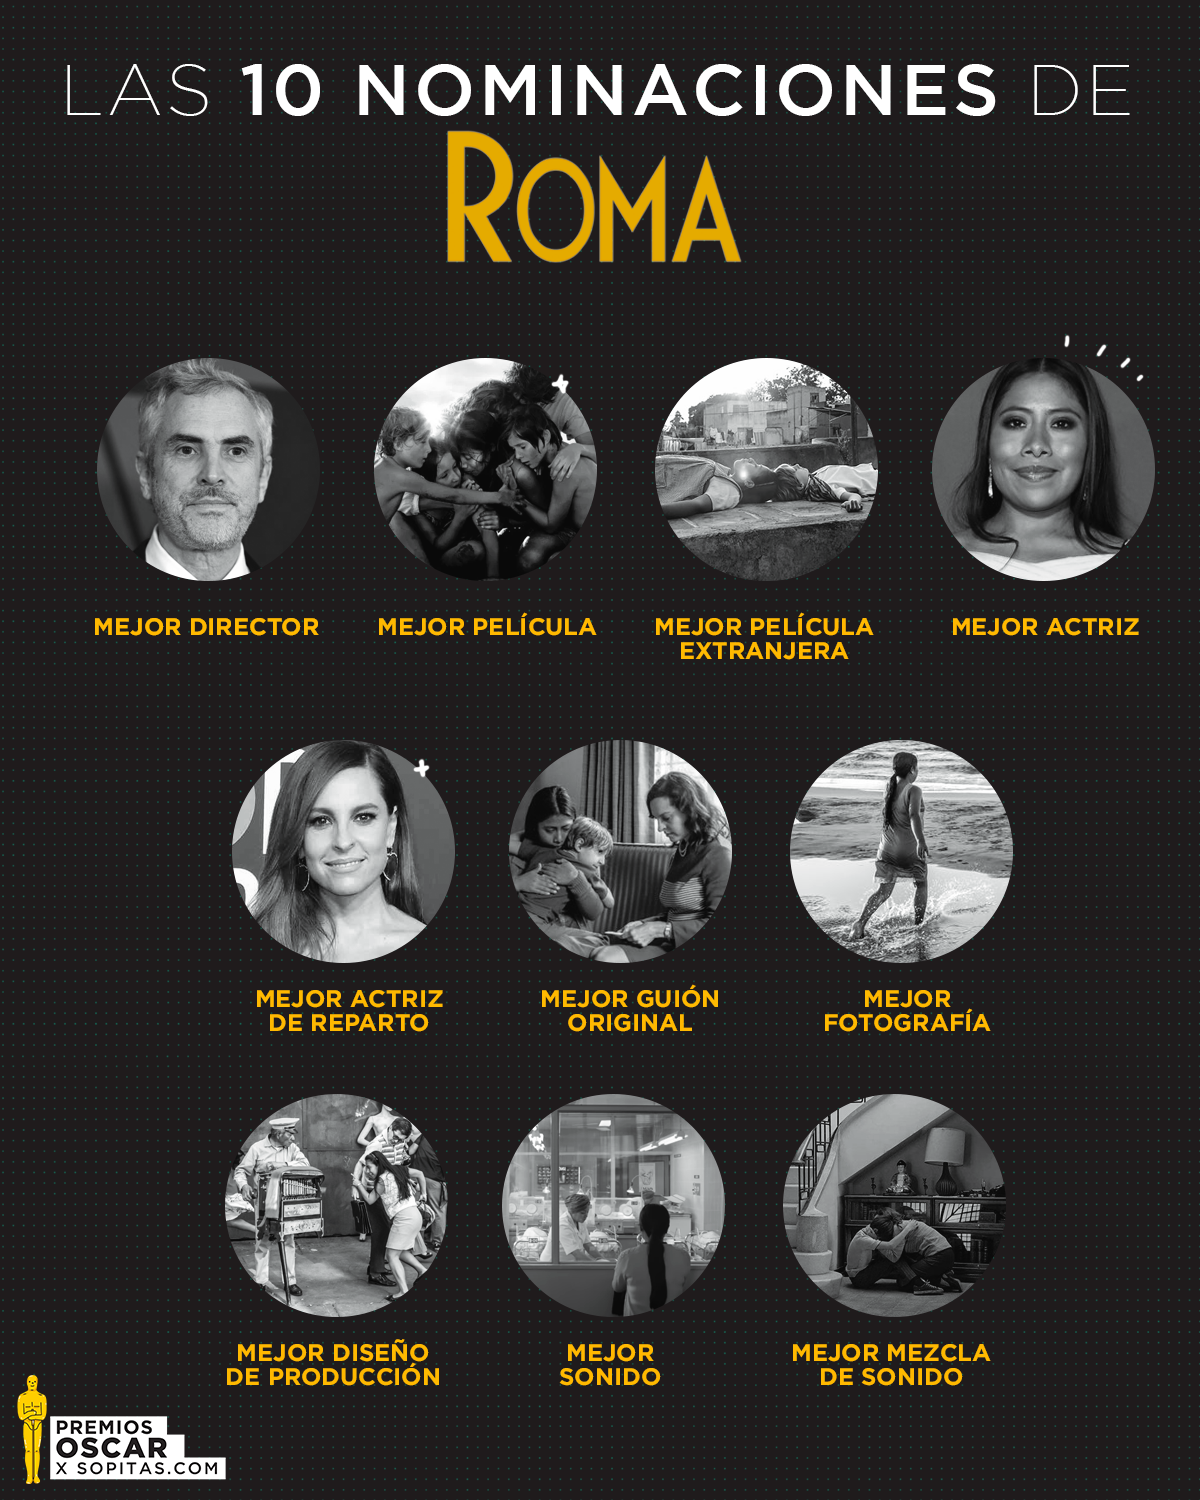 ¿Por qué 'ROMA' hizo historia en las nominaciones a los premios Oscar 2019?